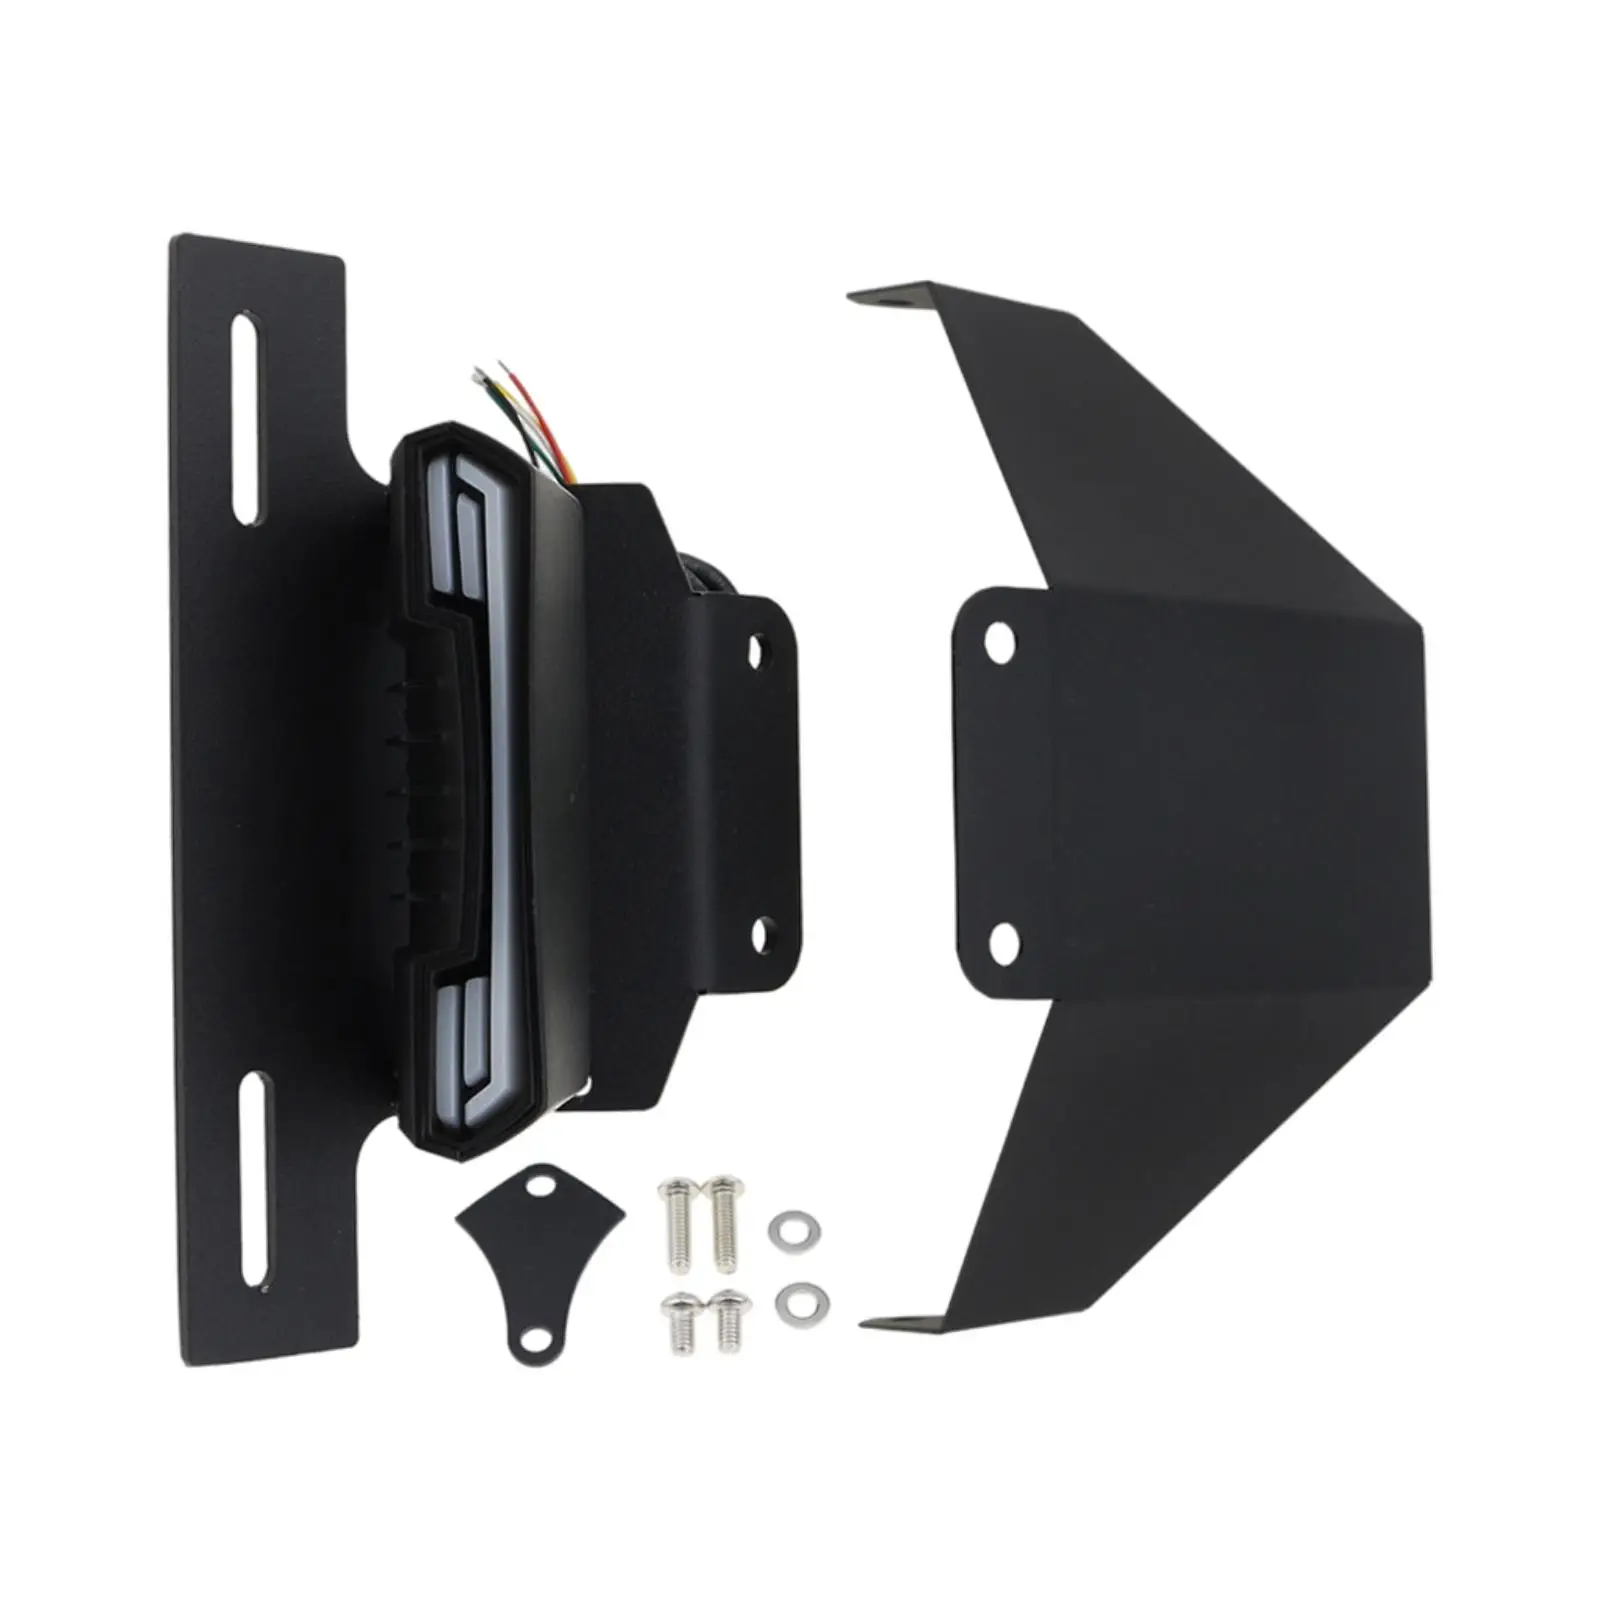 License Plate Holder Frame Bracket Kit fits for YAMAHA BOLT R-SPEC XV950R 2014-2019